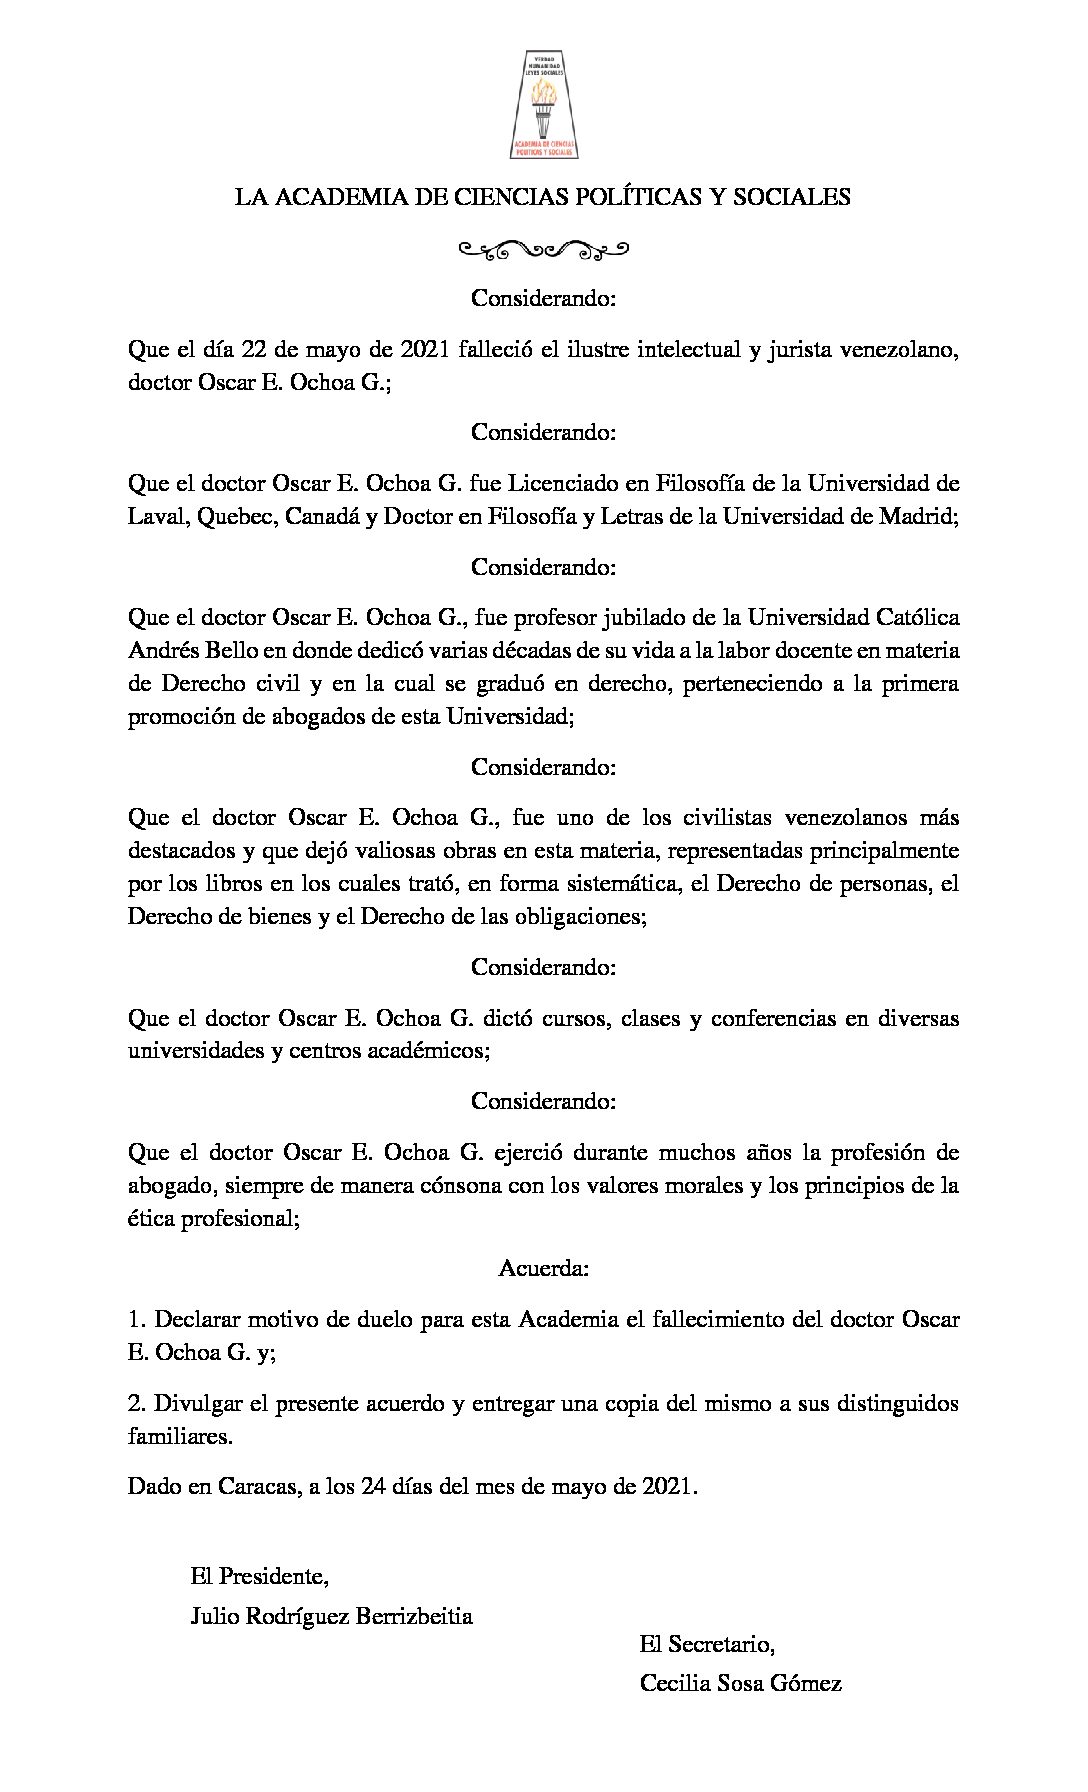 Acuerdo de duelo con ocasión del lamentable fallecimiento del Dr. Oscar E. Ochoa G.